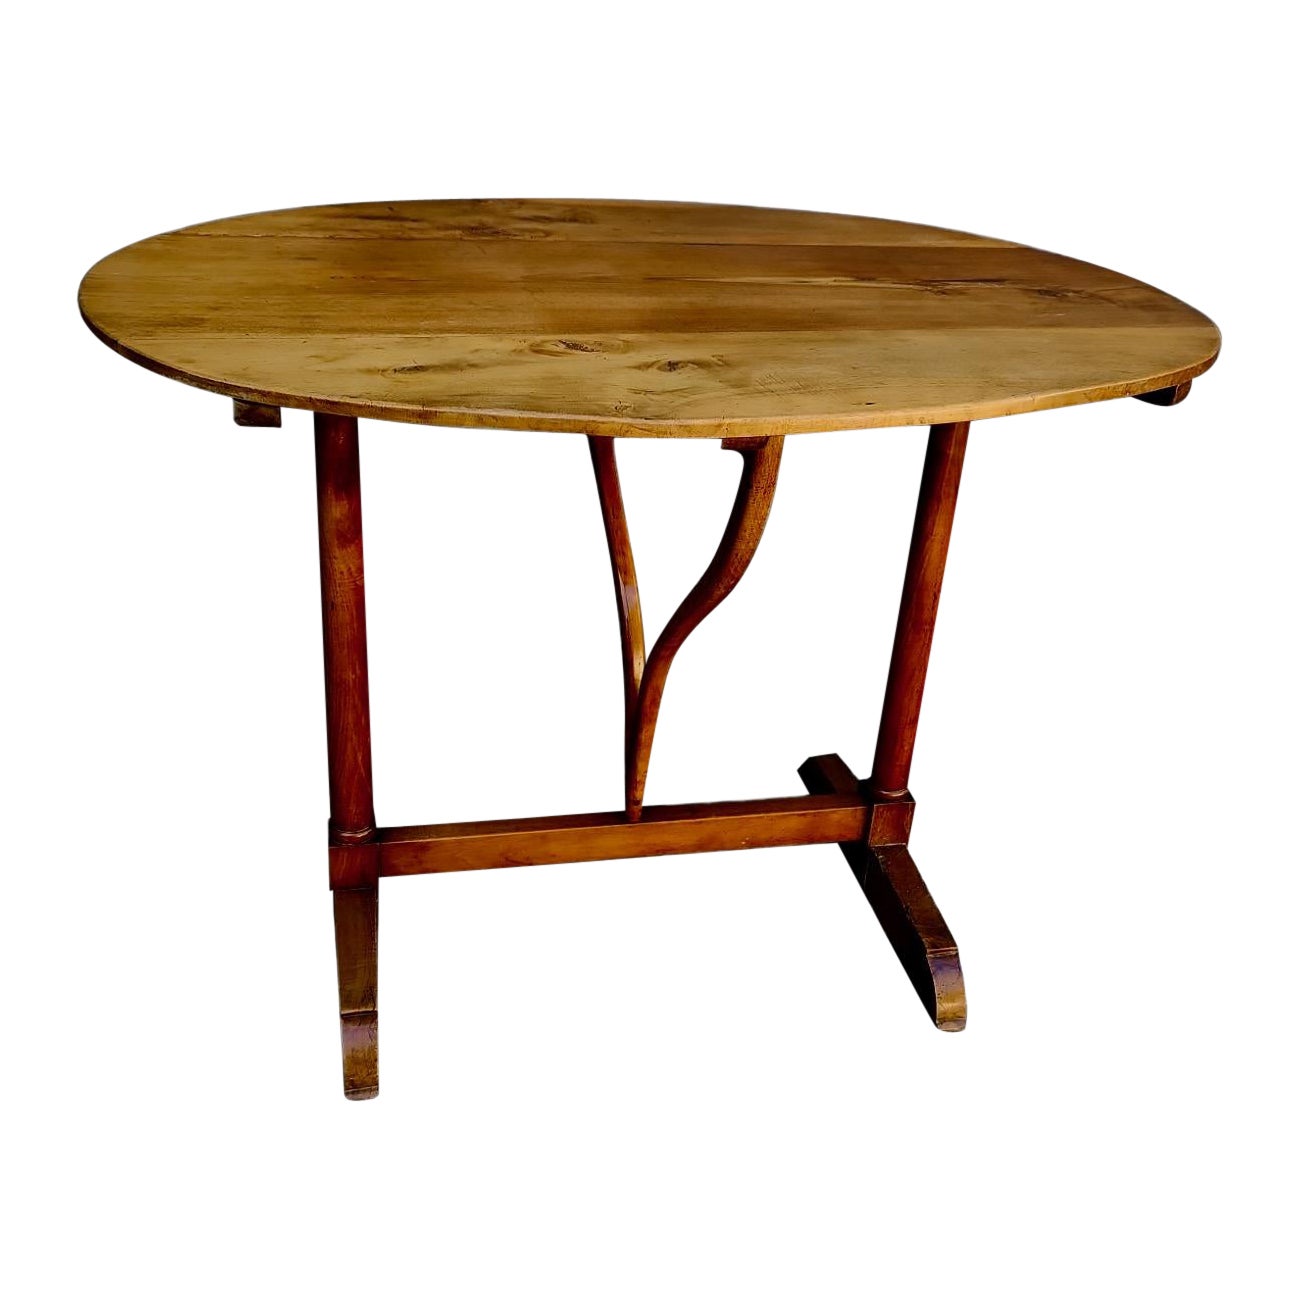 Französischer Flip-Tisch des 19. Jahrhunderts